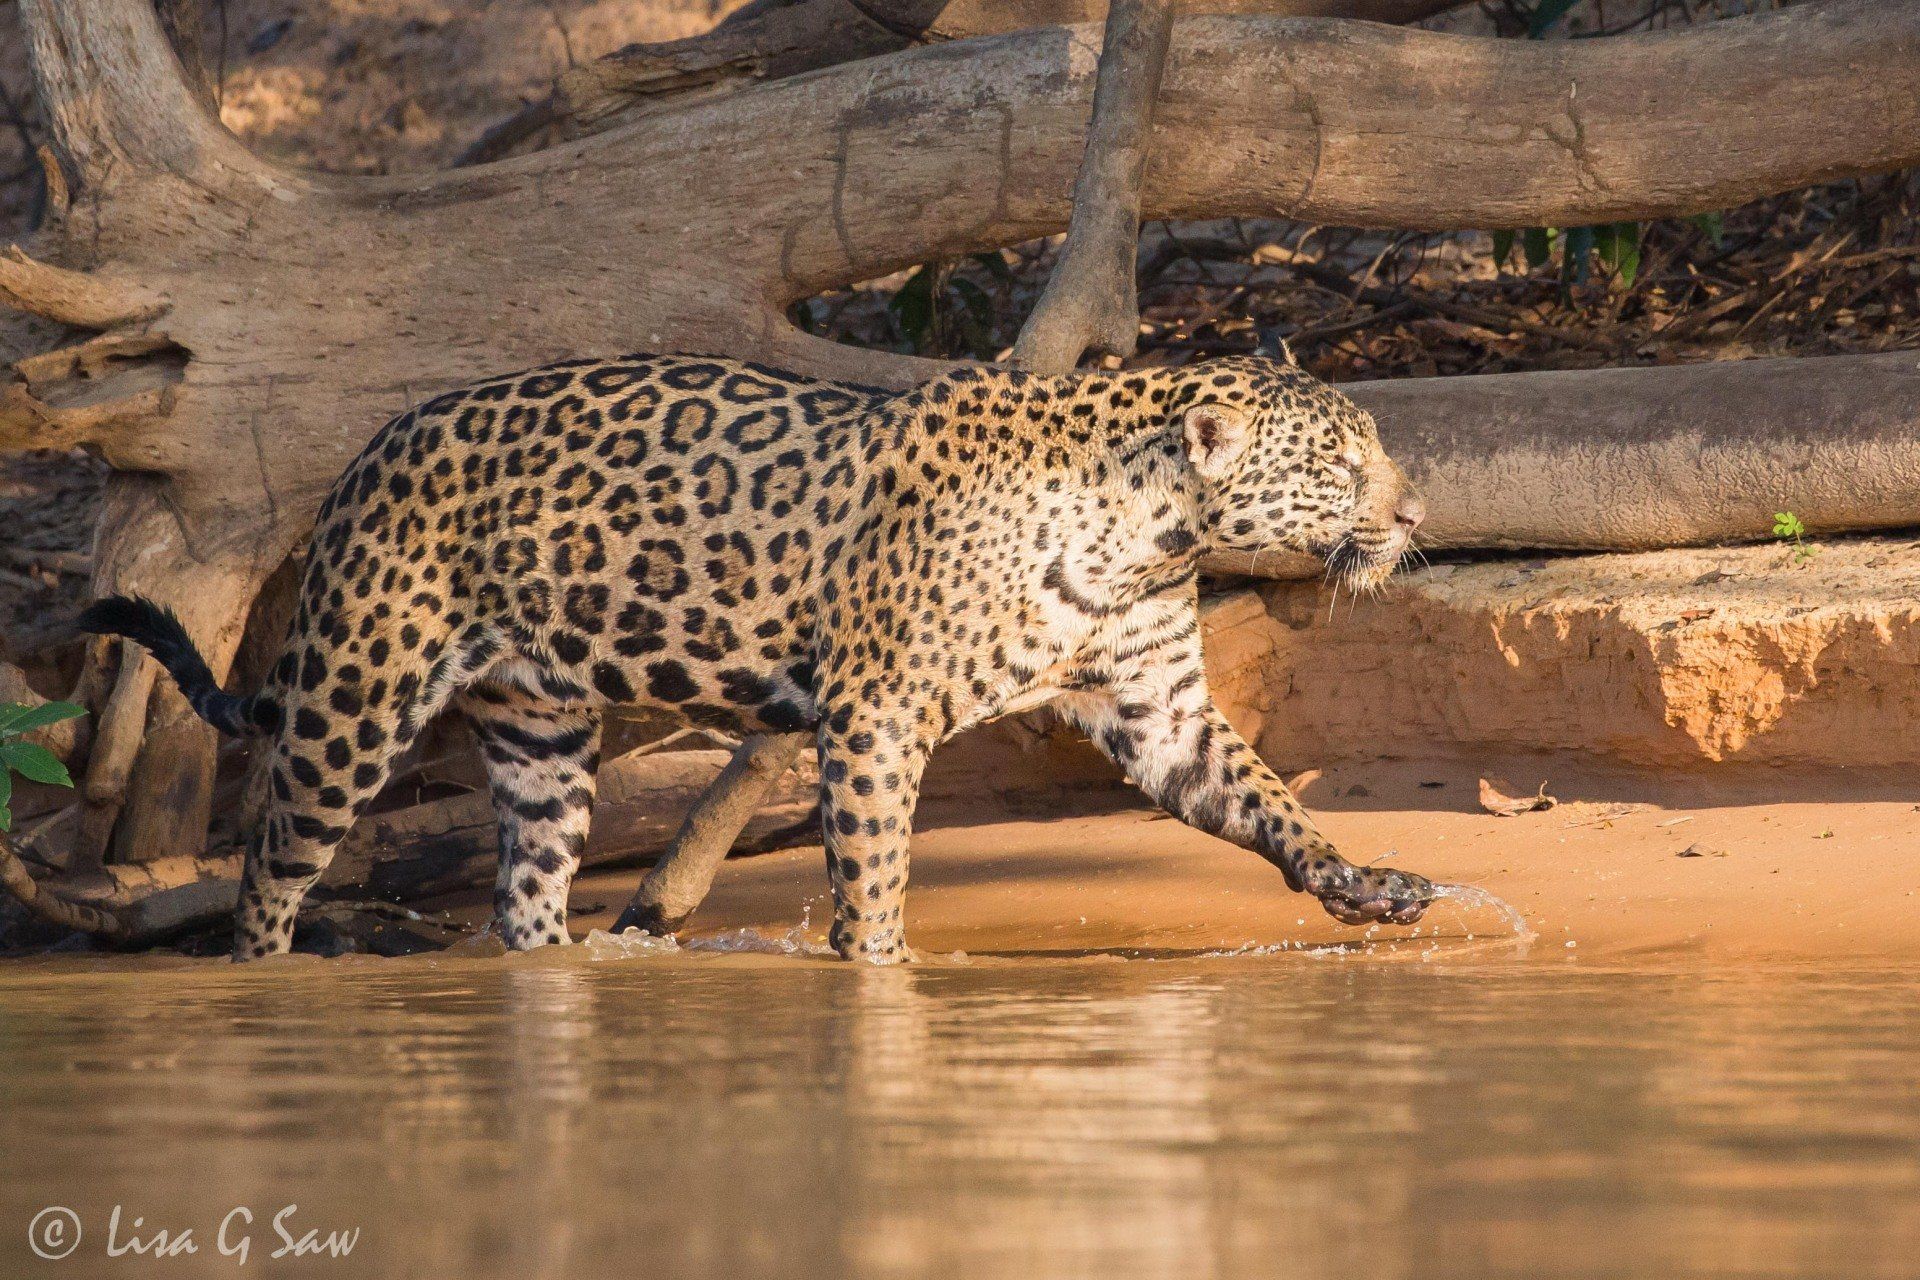 Jaguar in Pantanal Wetlands